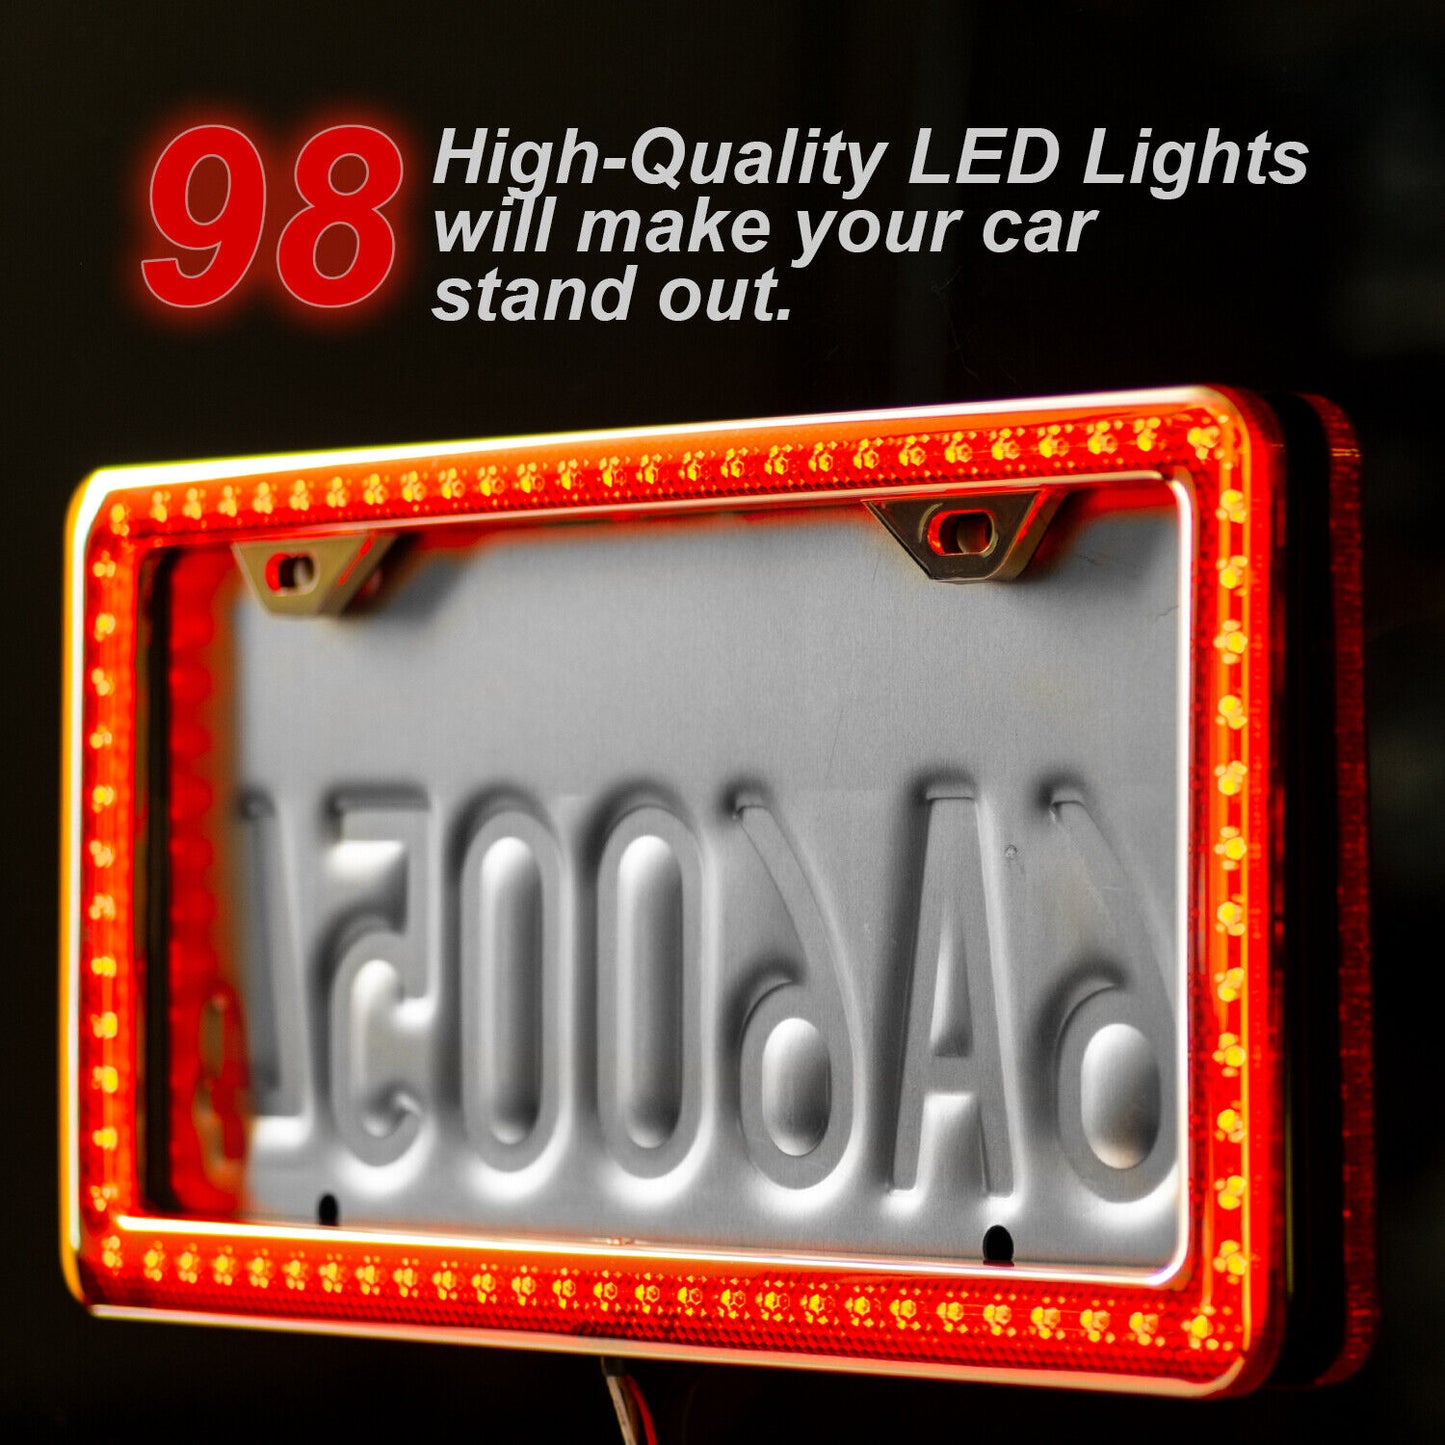 LED Lighted License Plate Frame Cover Holder Black and Chrome Universal on Cars